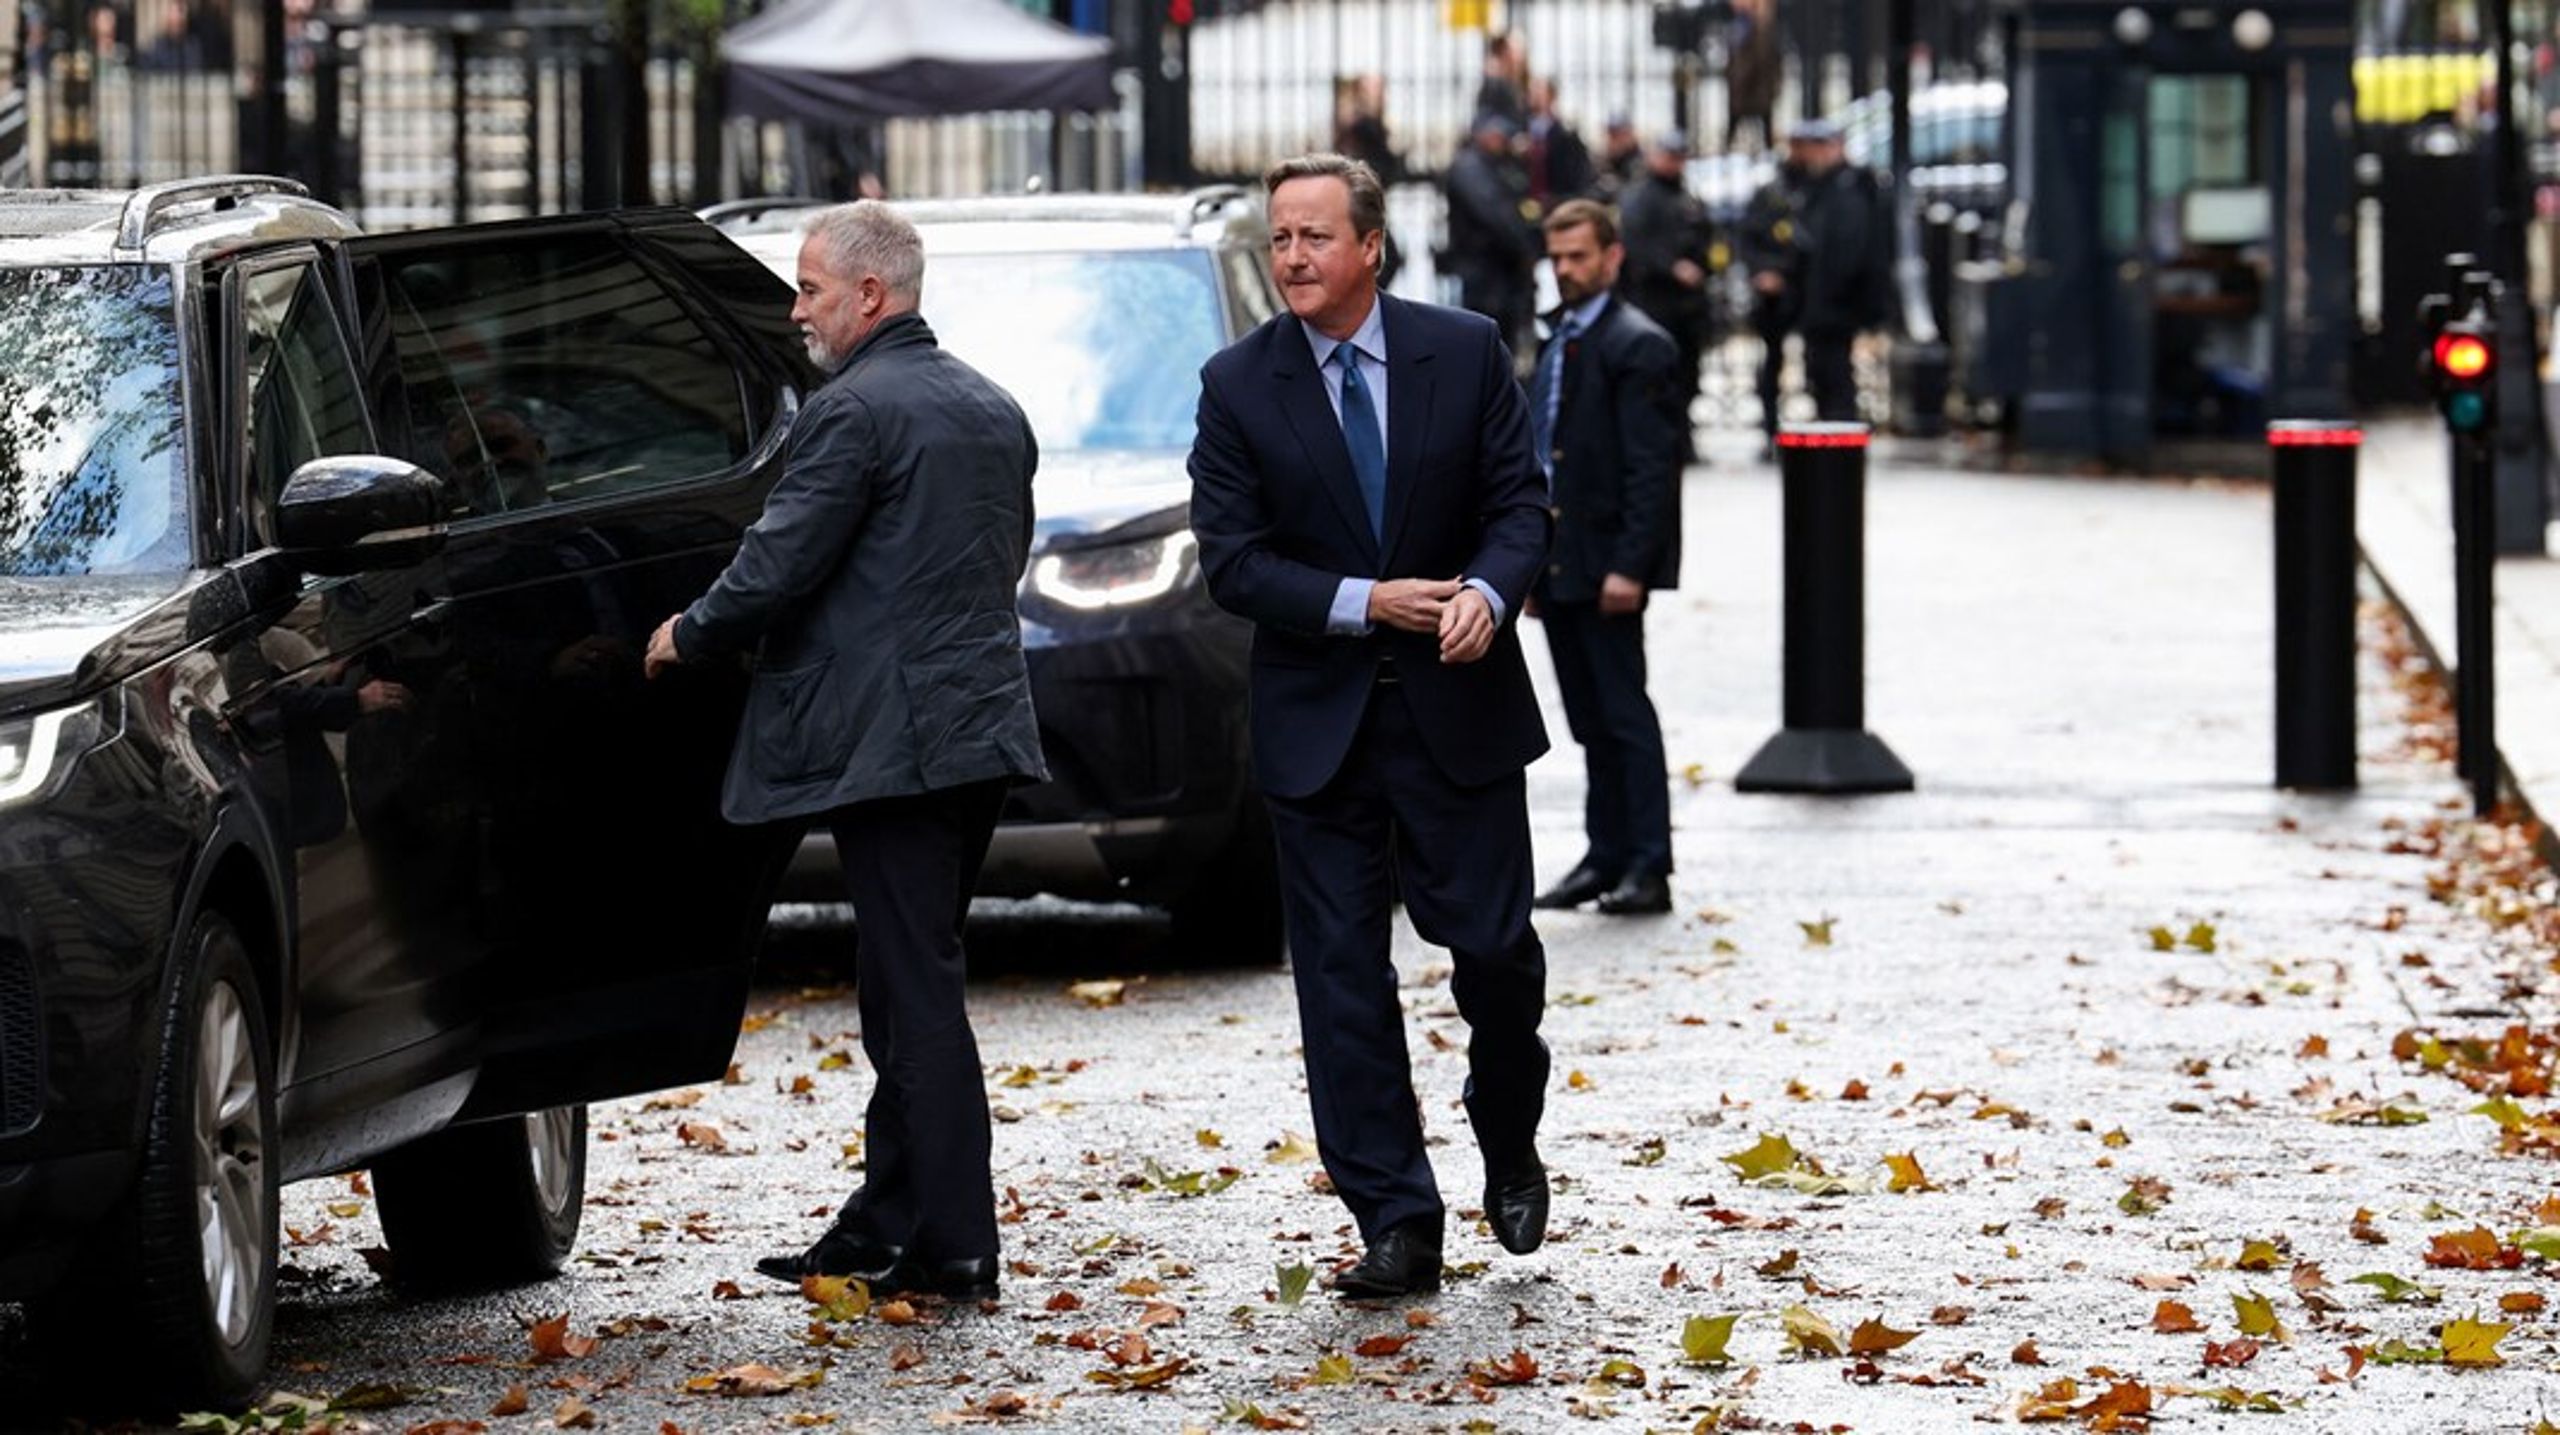 Forbløffelsen blandt britiske medier og politikere var stor, da tidligere premierminister David Cameron i mandags pludselig stod ud af en bil foran Downing Street 10.